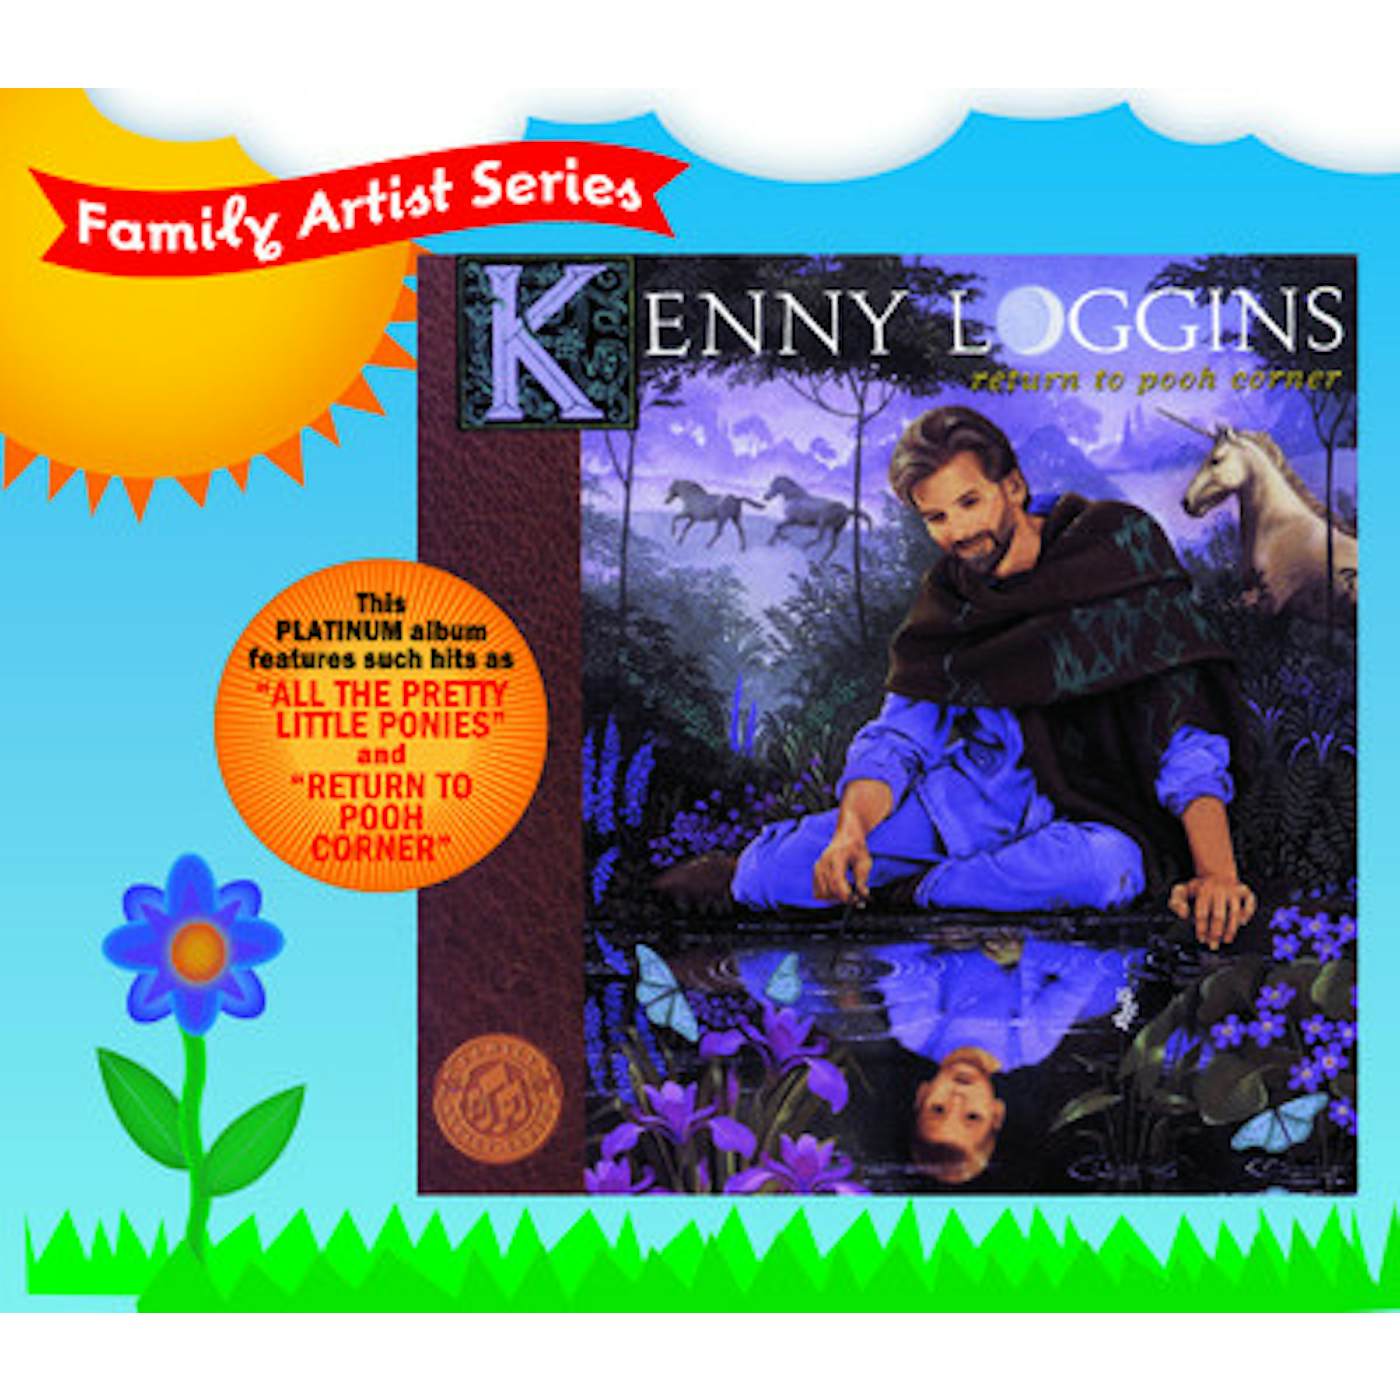 Kenny Loggins RETURN TO POOH CORNER CD